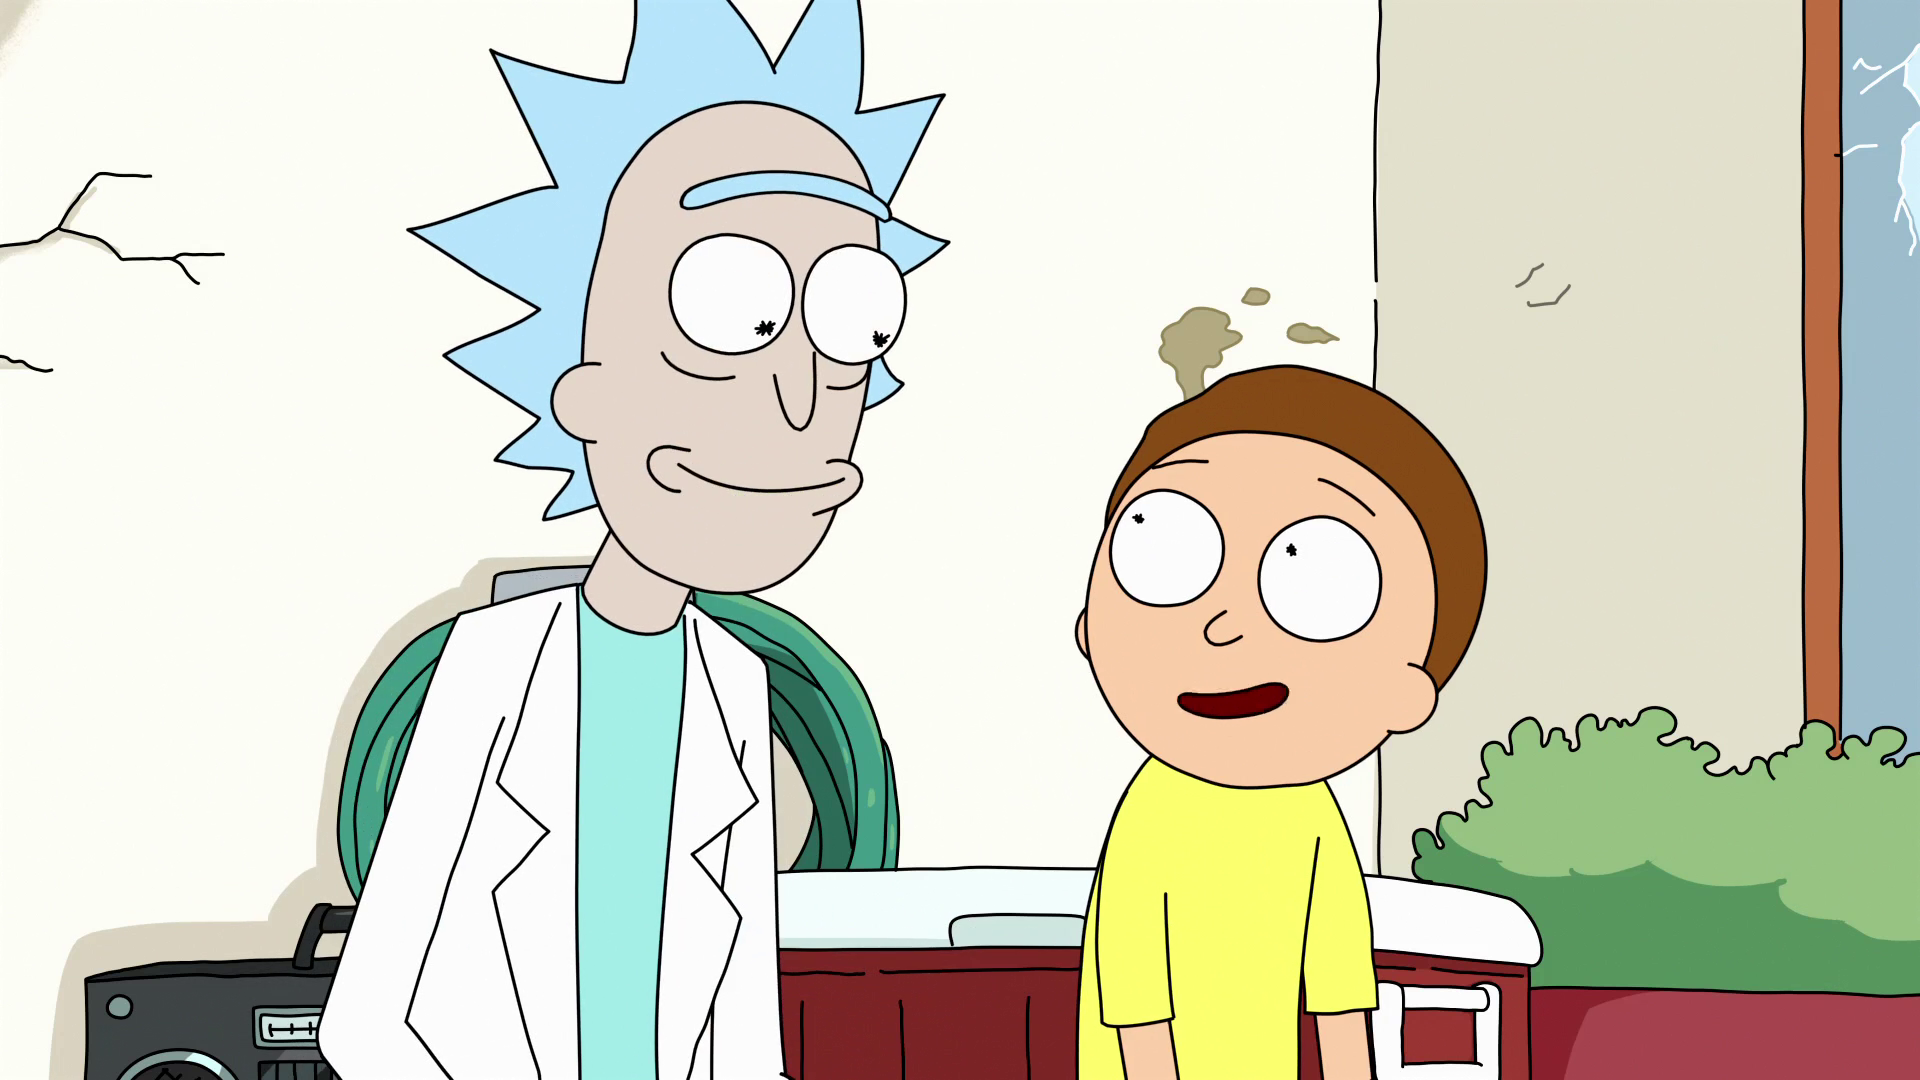 Rick and Morty Art Appreciation Show